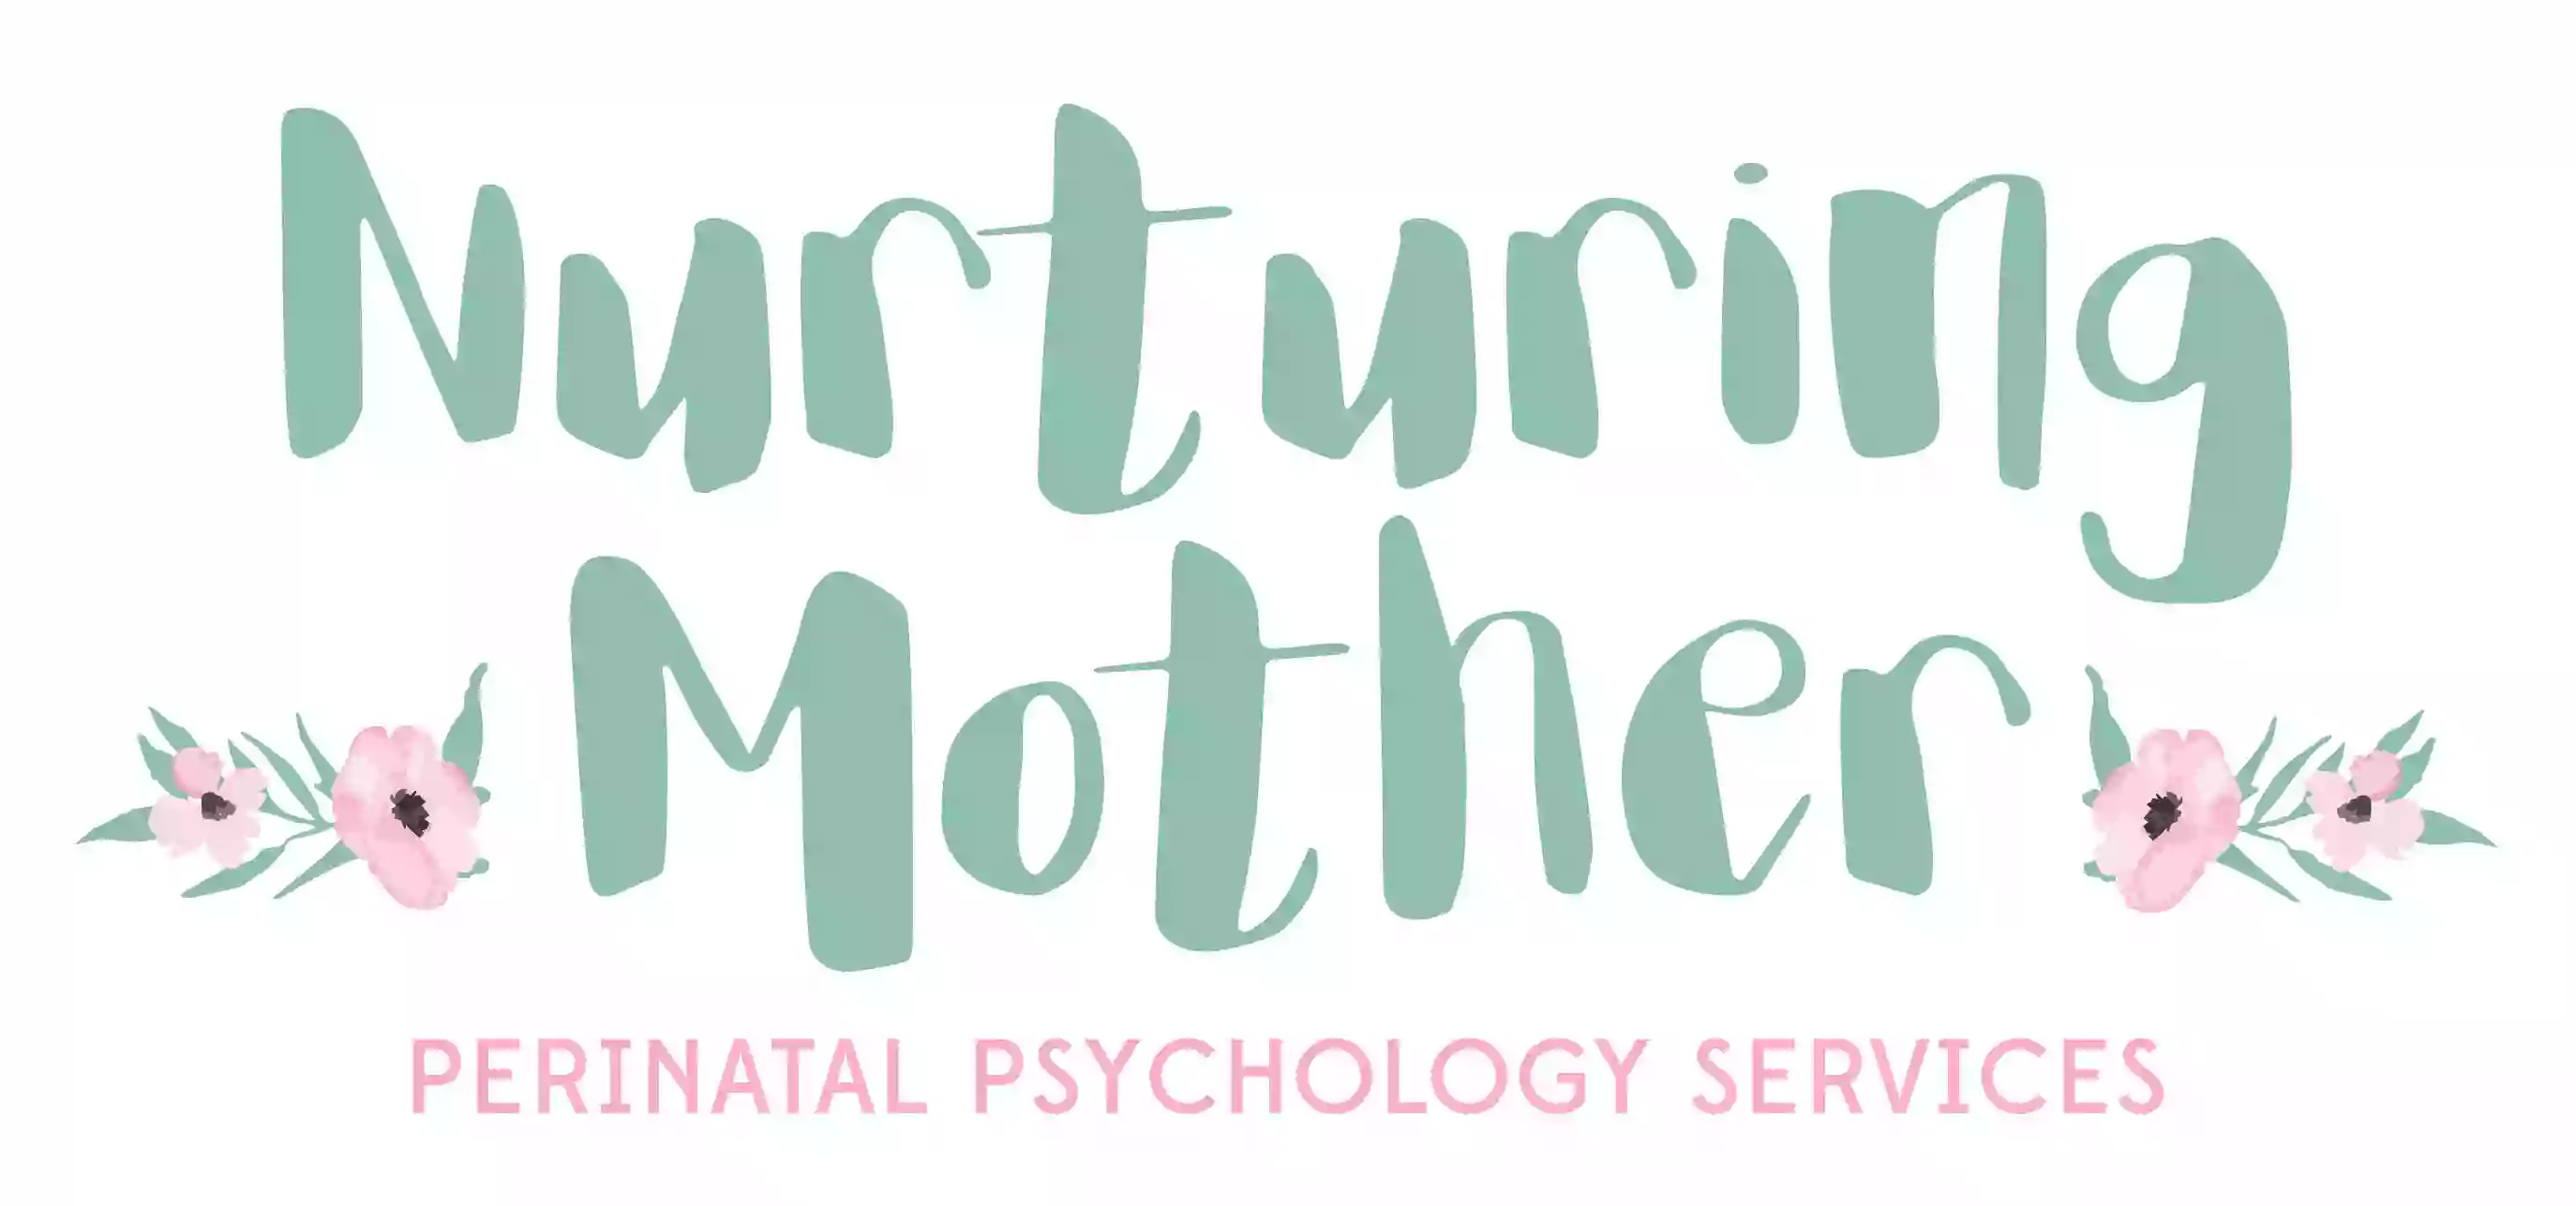 Nurturing Mother